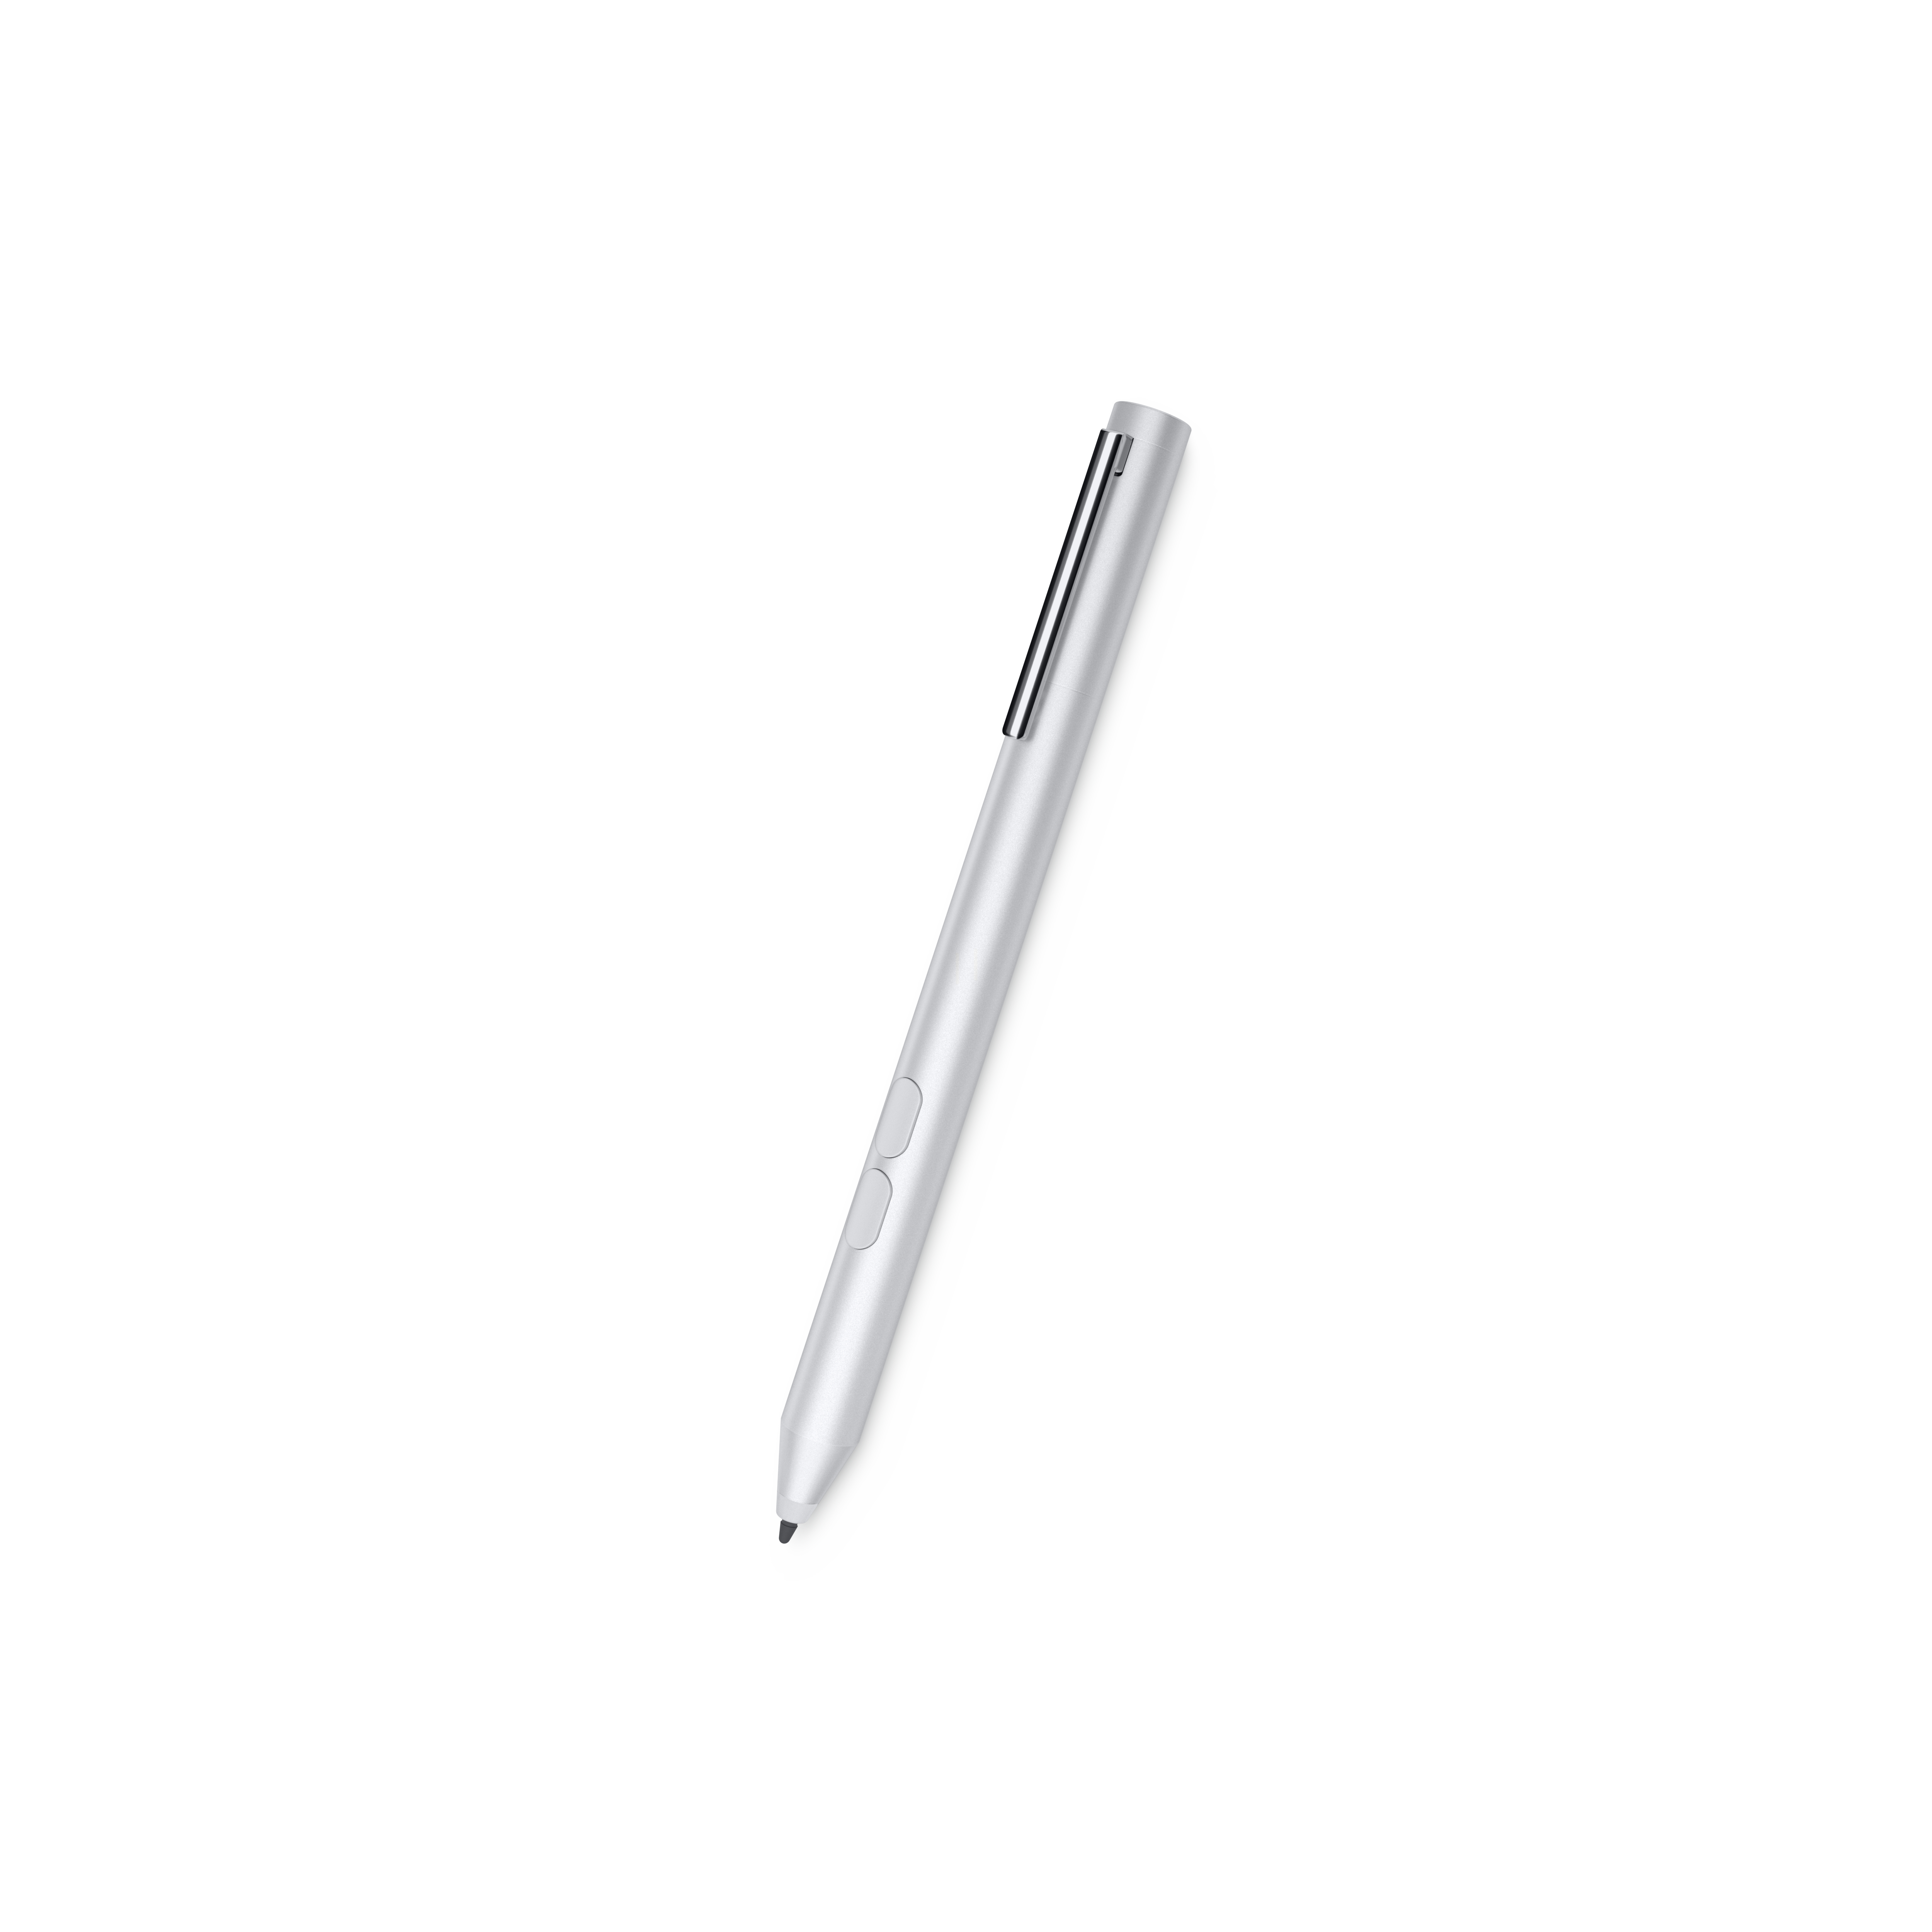 Specs Dell Pn338m Stylus Pen 18 G Silver Stylus Pens 750 vj